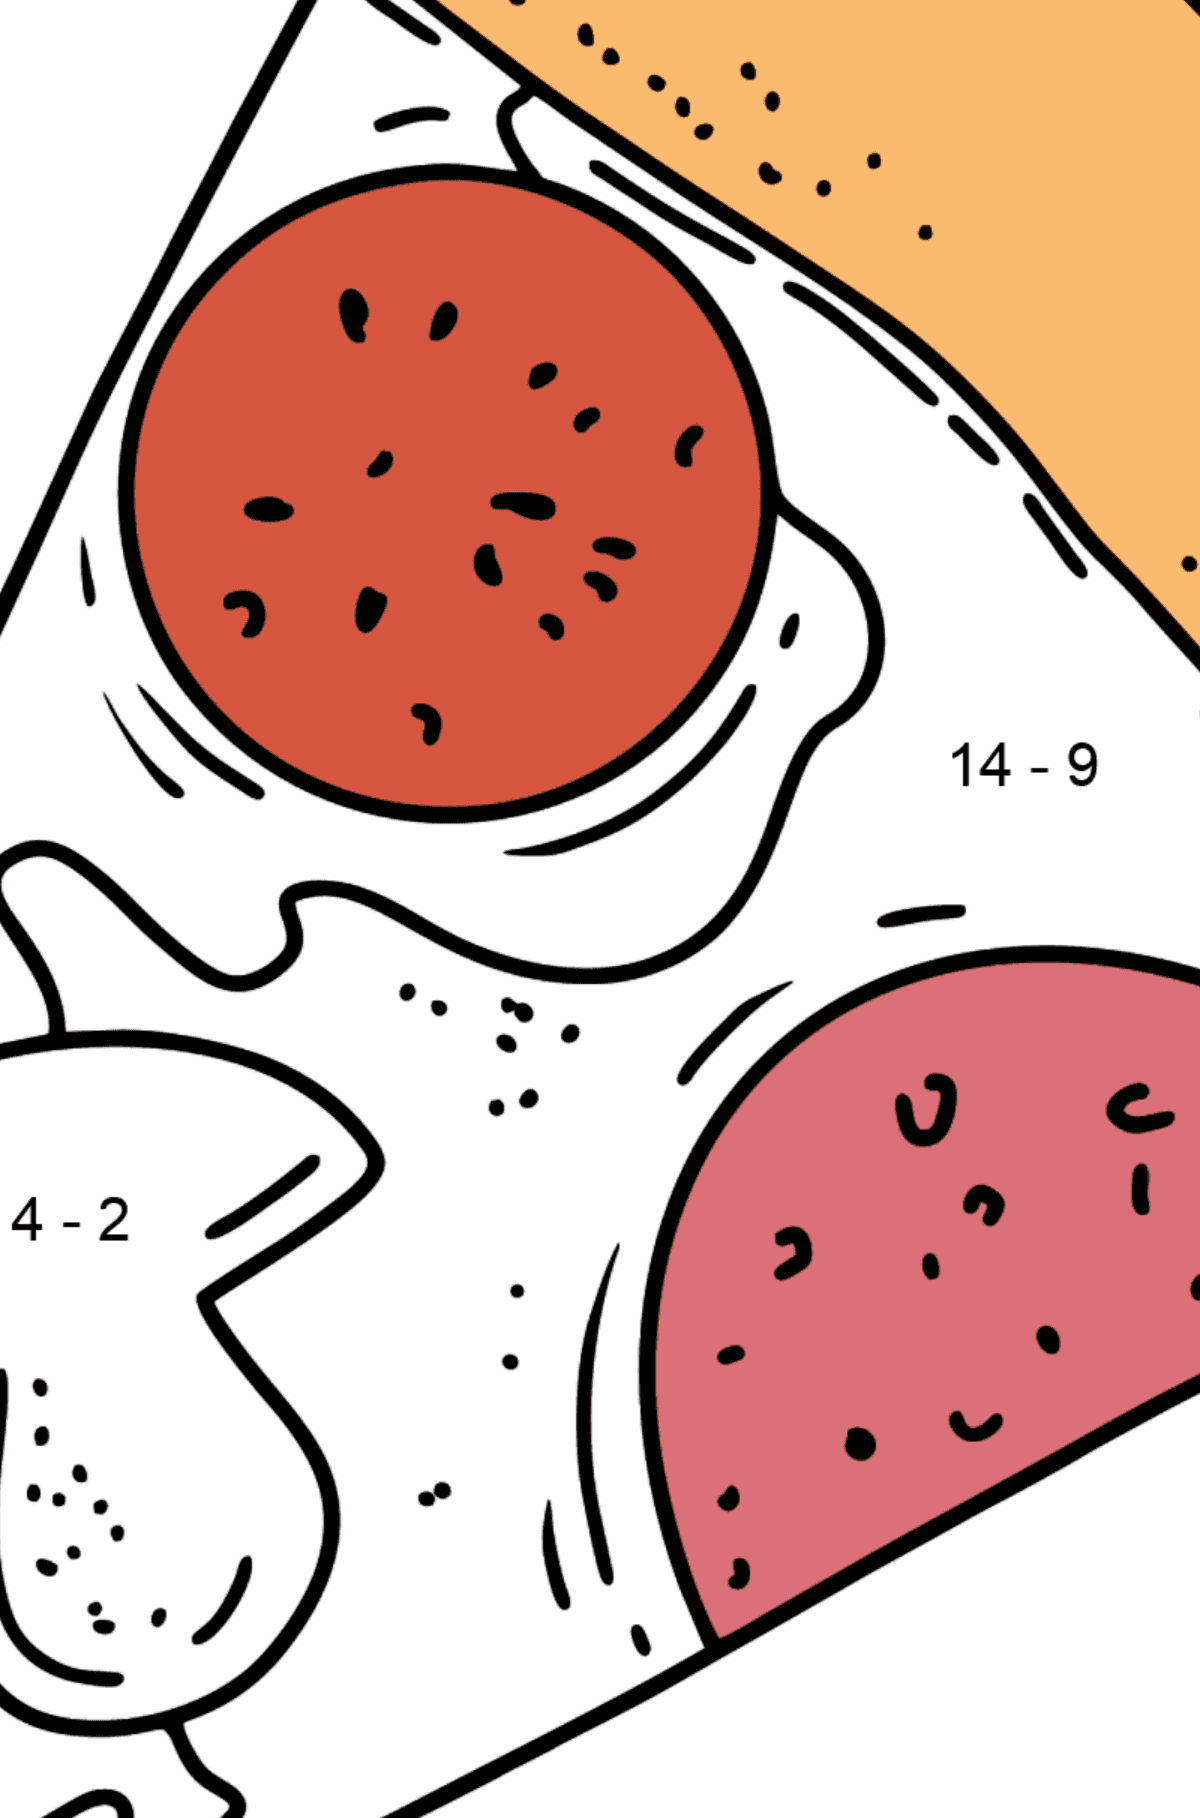 Desenho para colorir - pizza salame e cogumelos - Colorindo com Matemática - Subtração para Crianças